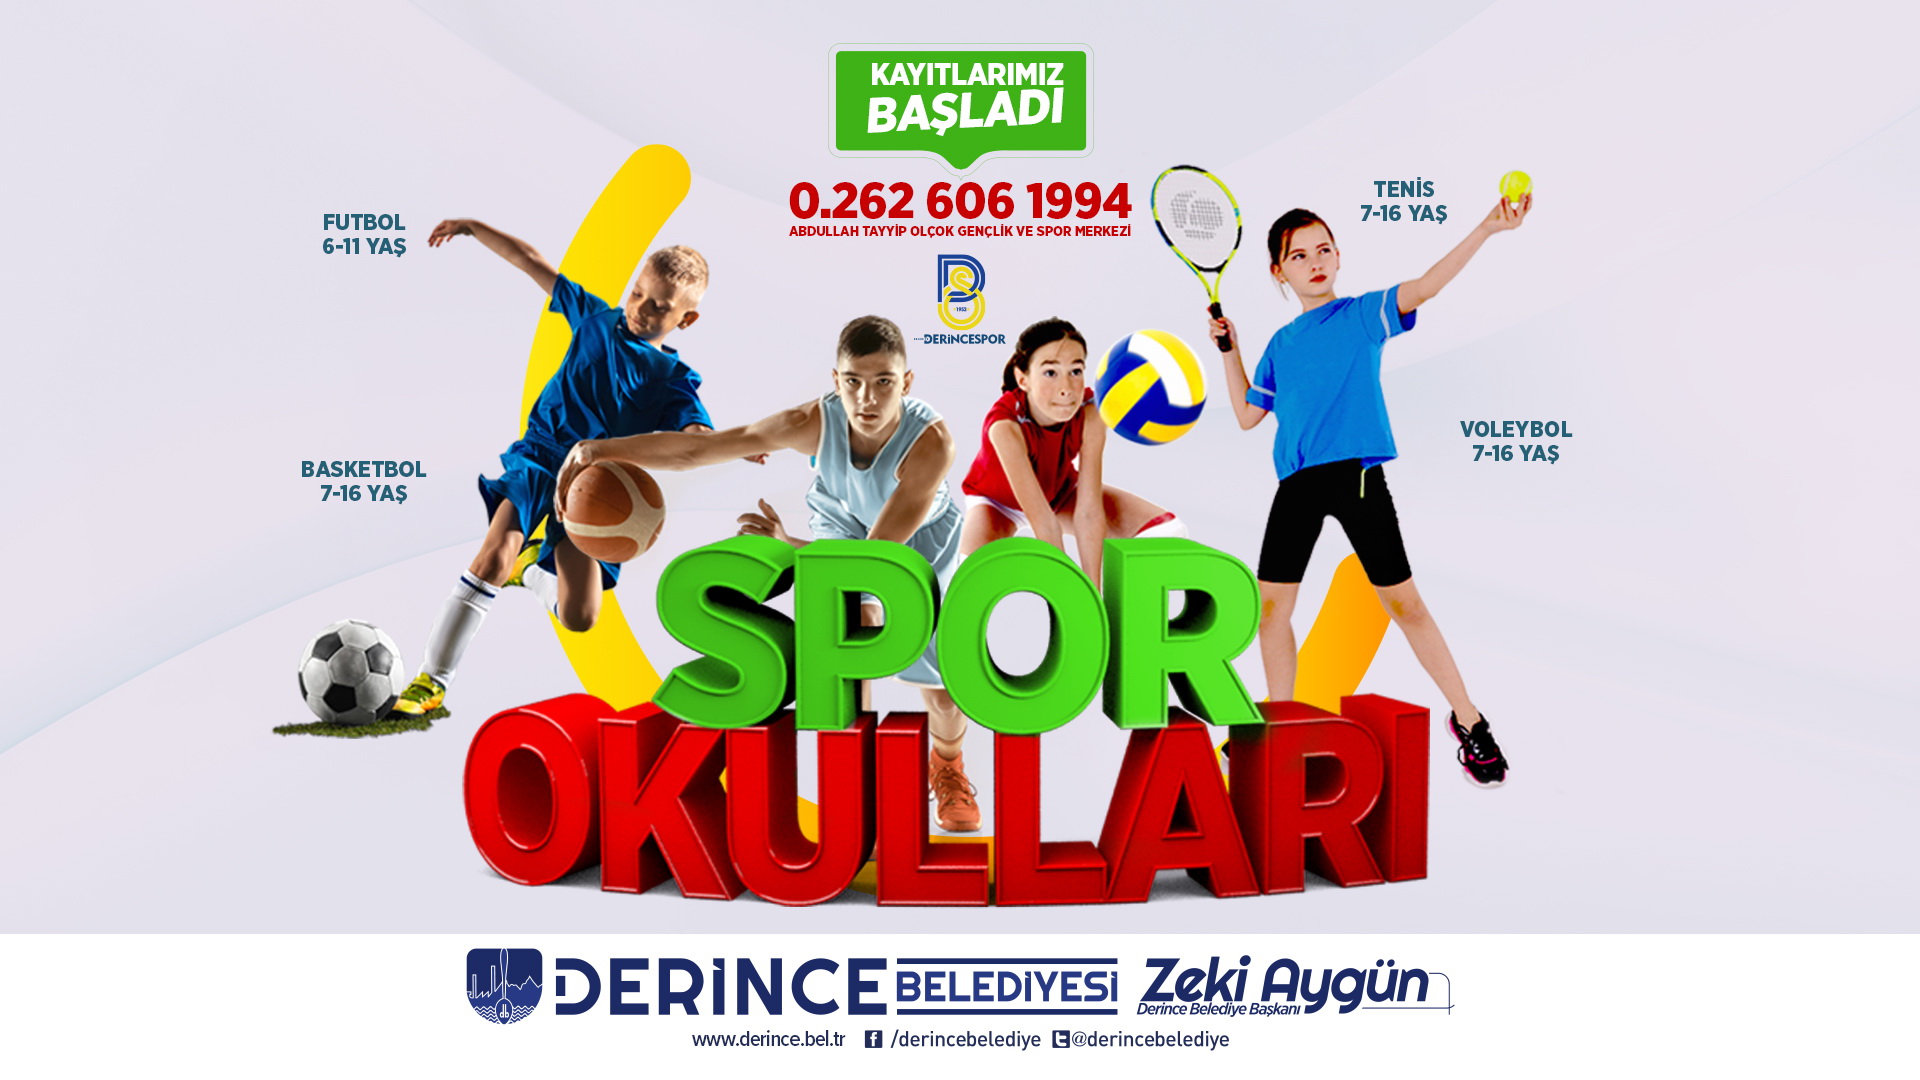 Spor Okullar in Kayt Zaman